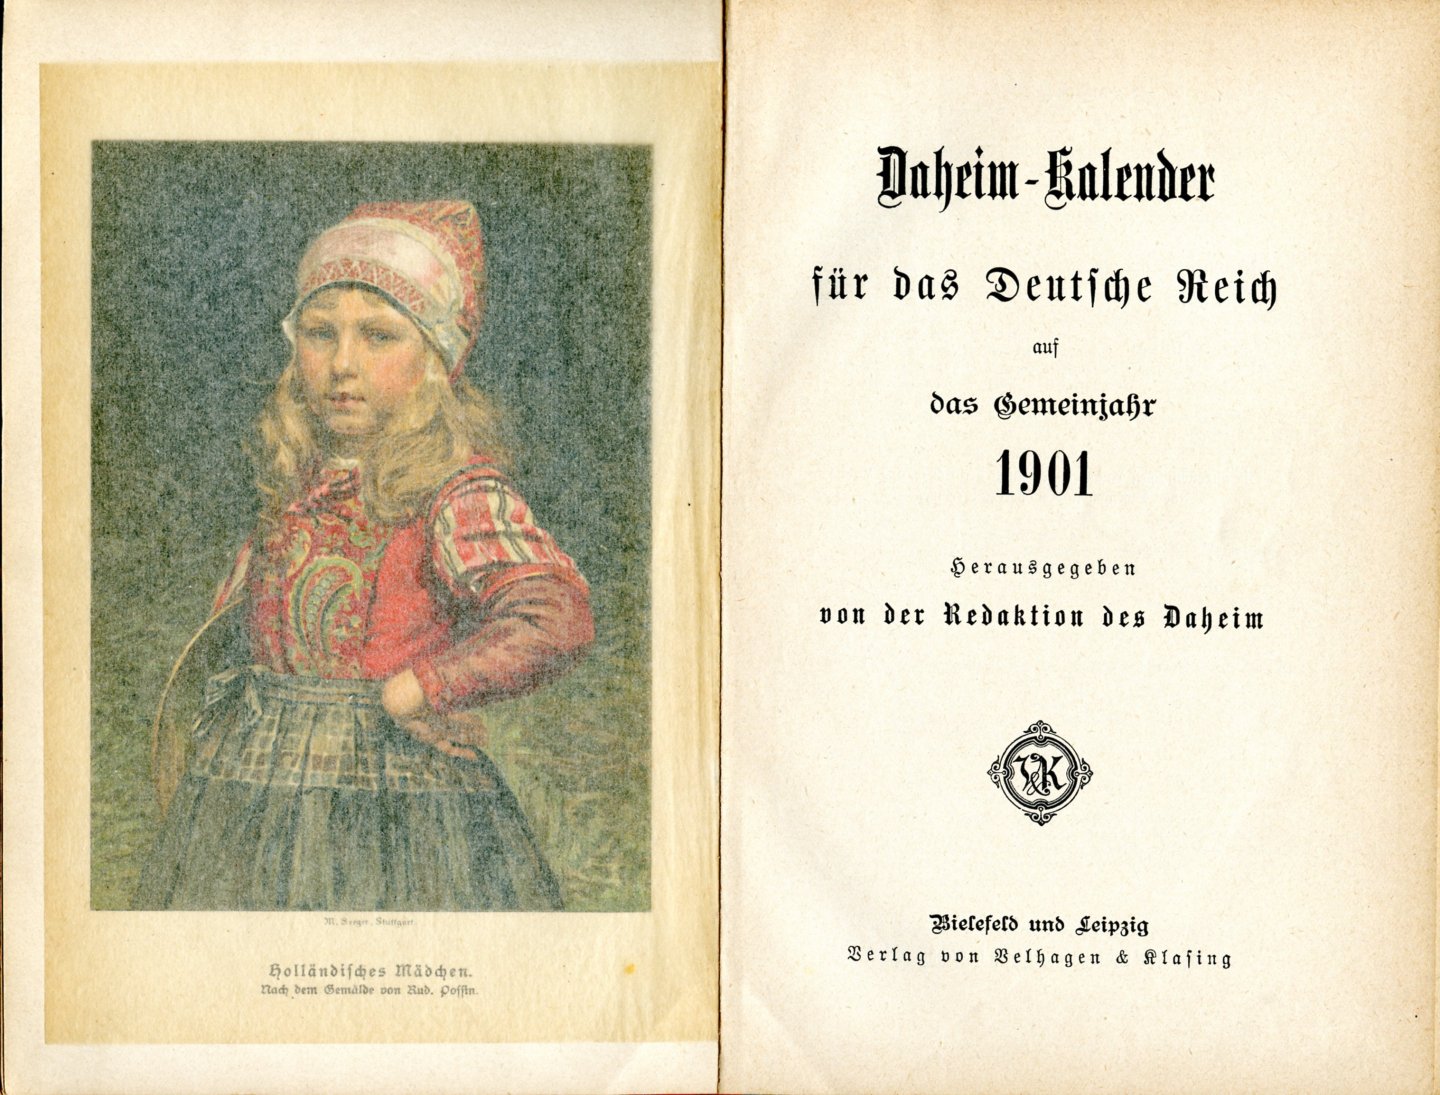 N.N. - Daheim-Kalender für das Deutsche Reich auf das Gemeinjahr 1901. [herausgegeben von der Redaktion des Daheim]